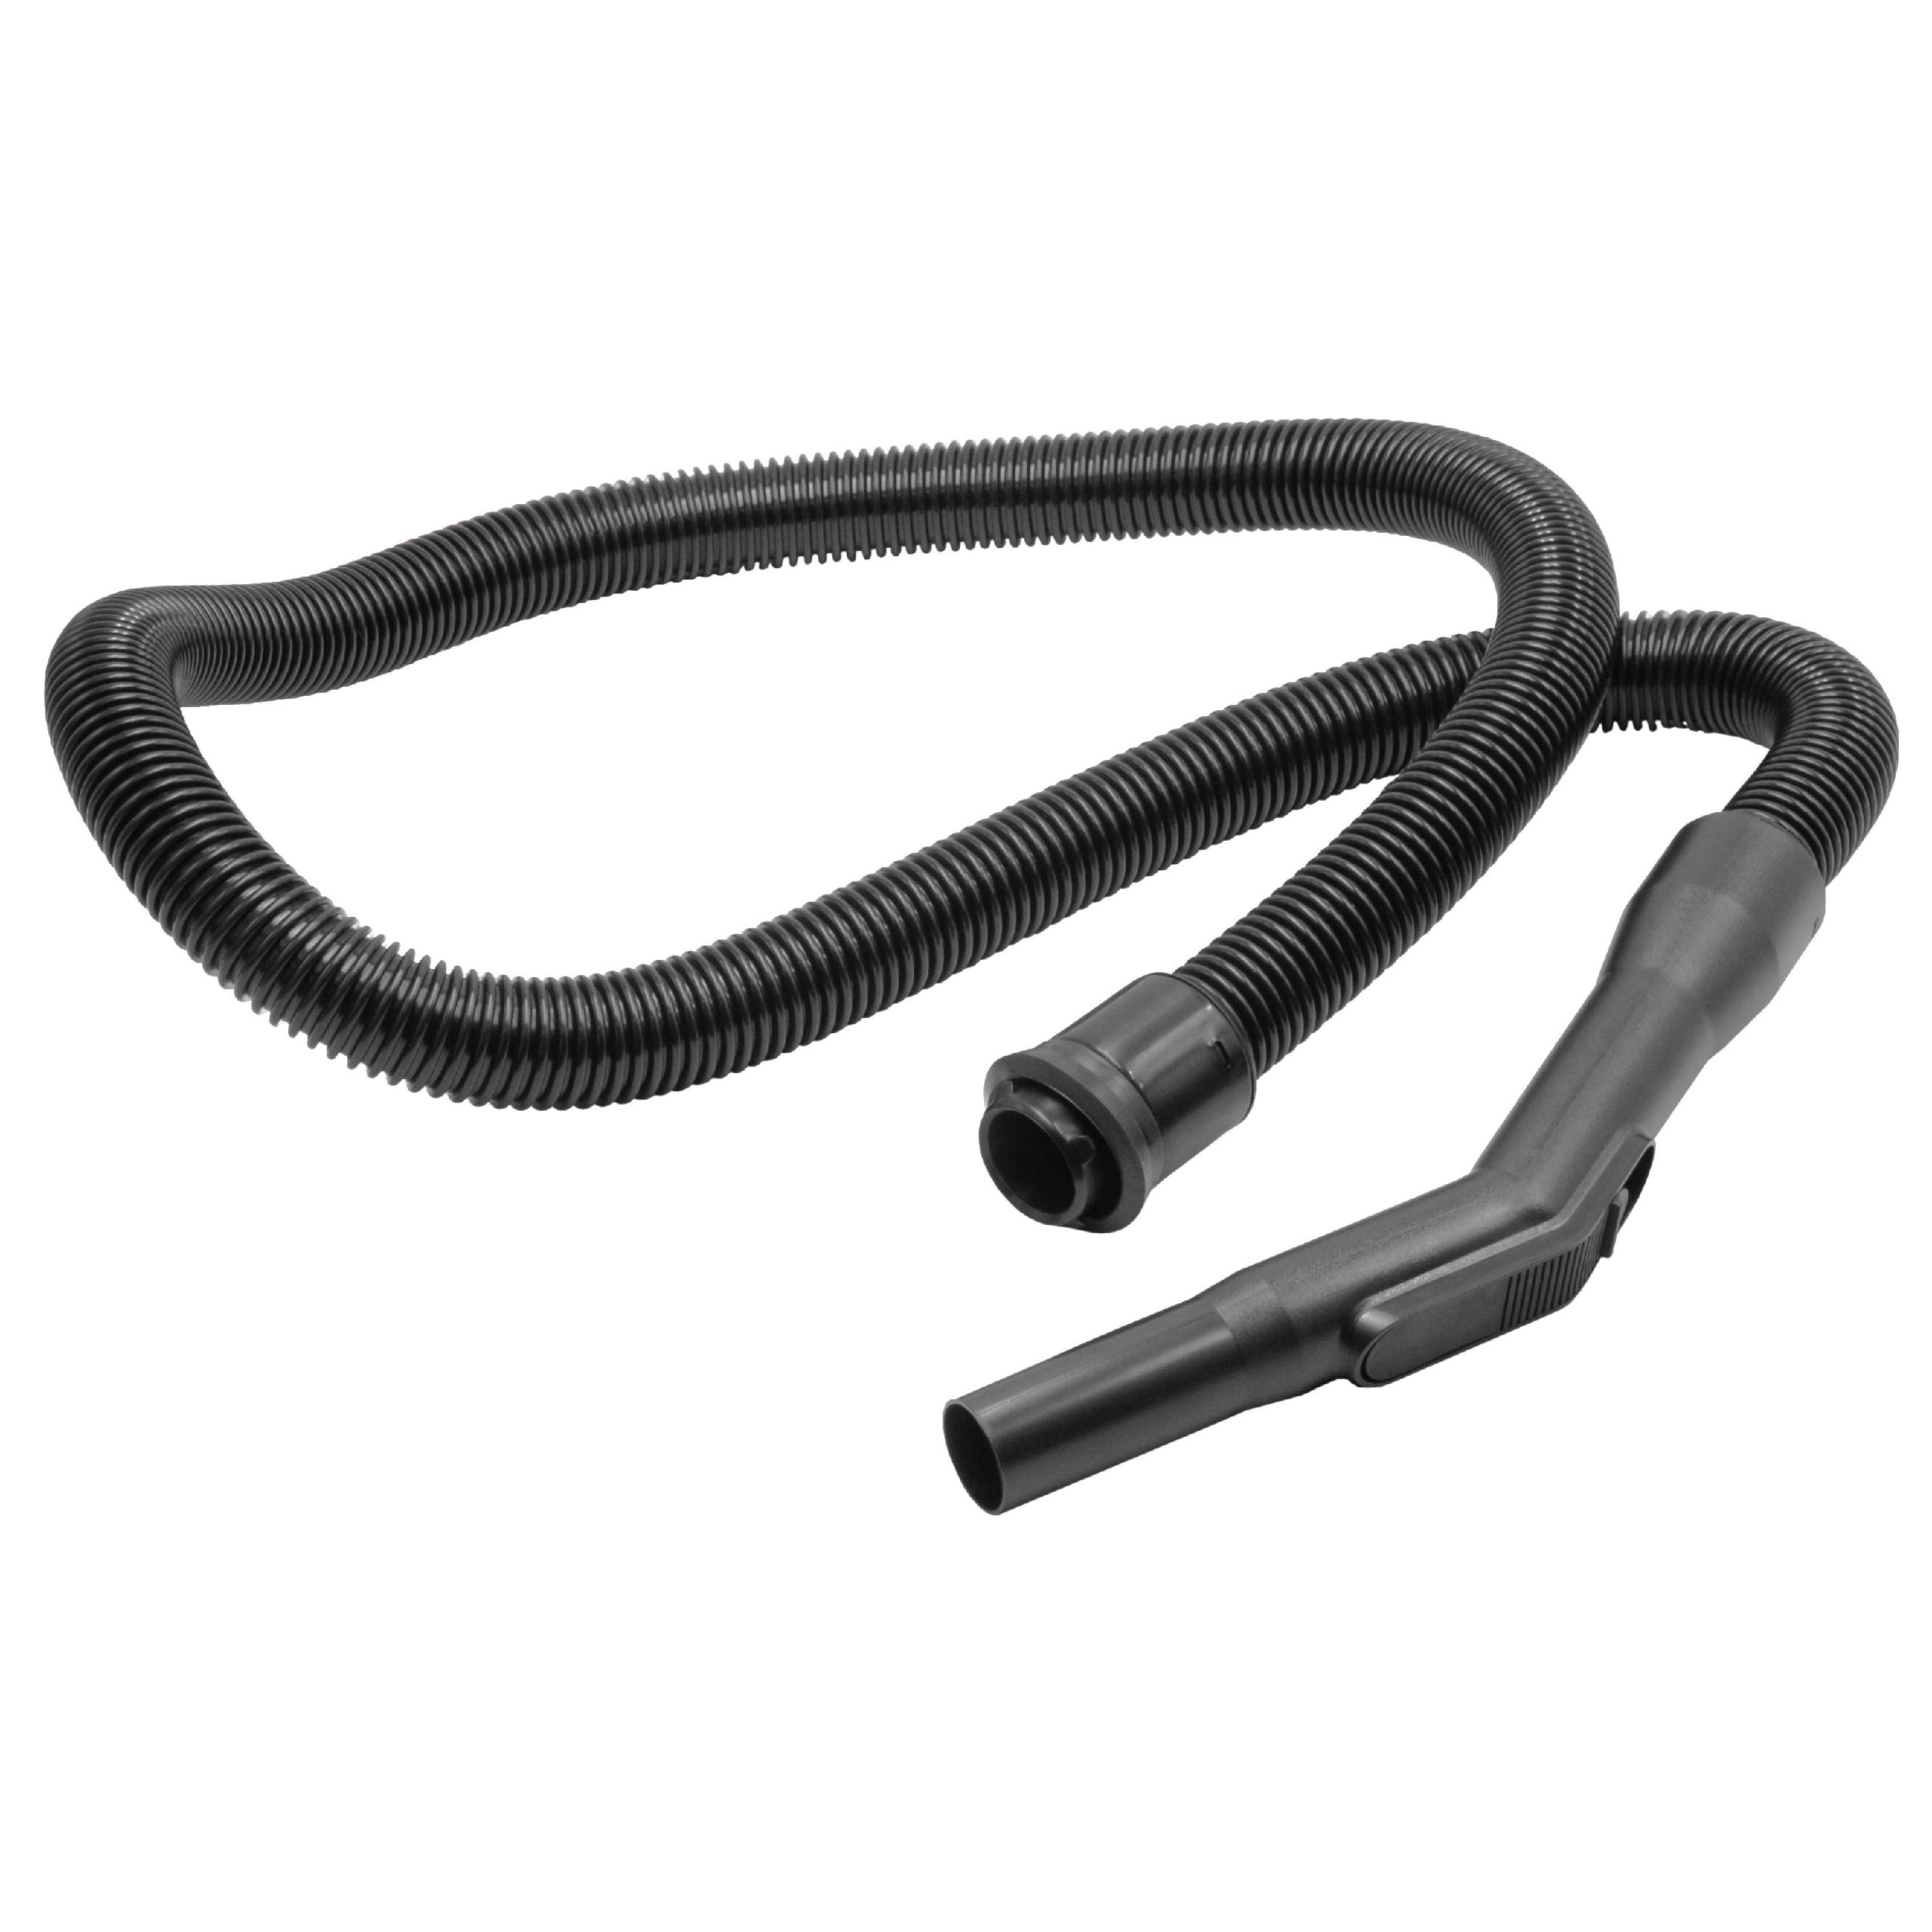 Tuyau flexible pour aspirateur Electrolux D 711 et autres - 213 cm (avec poignée), ⌀ 32mm